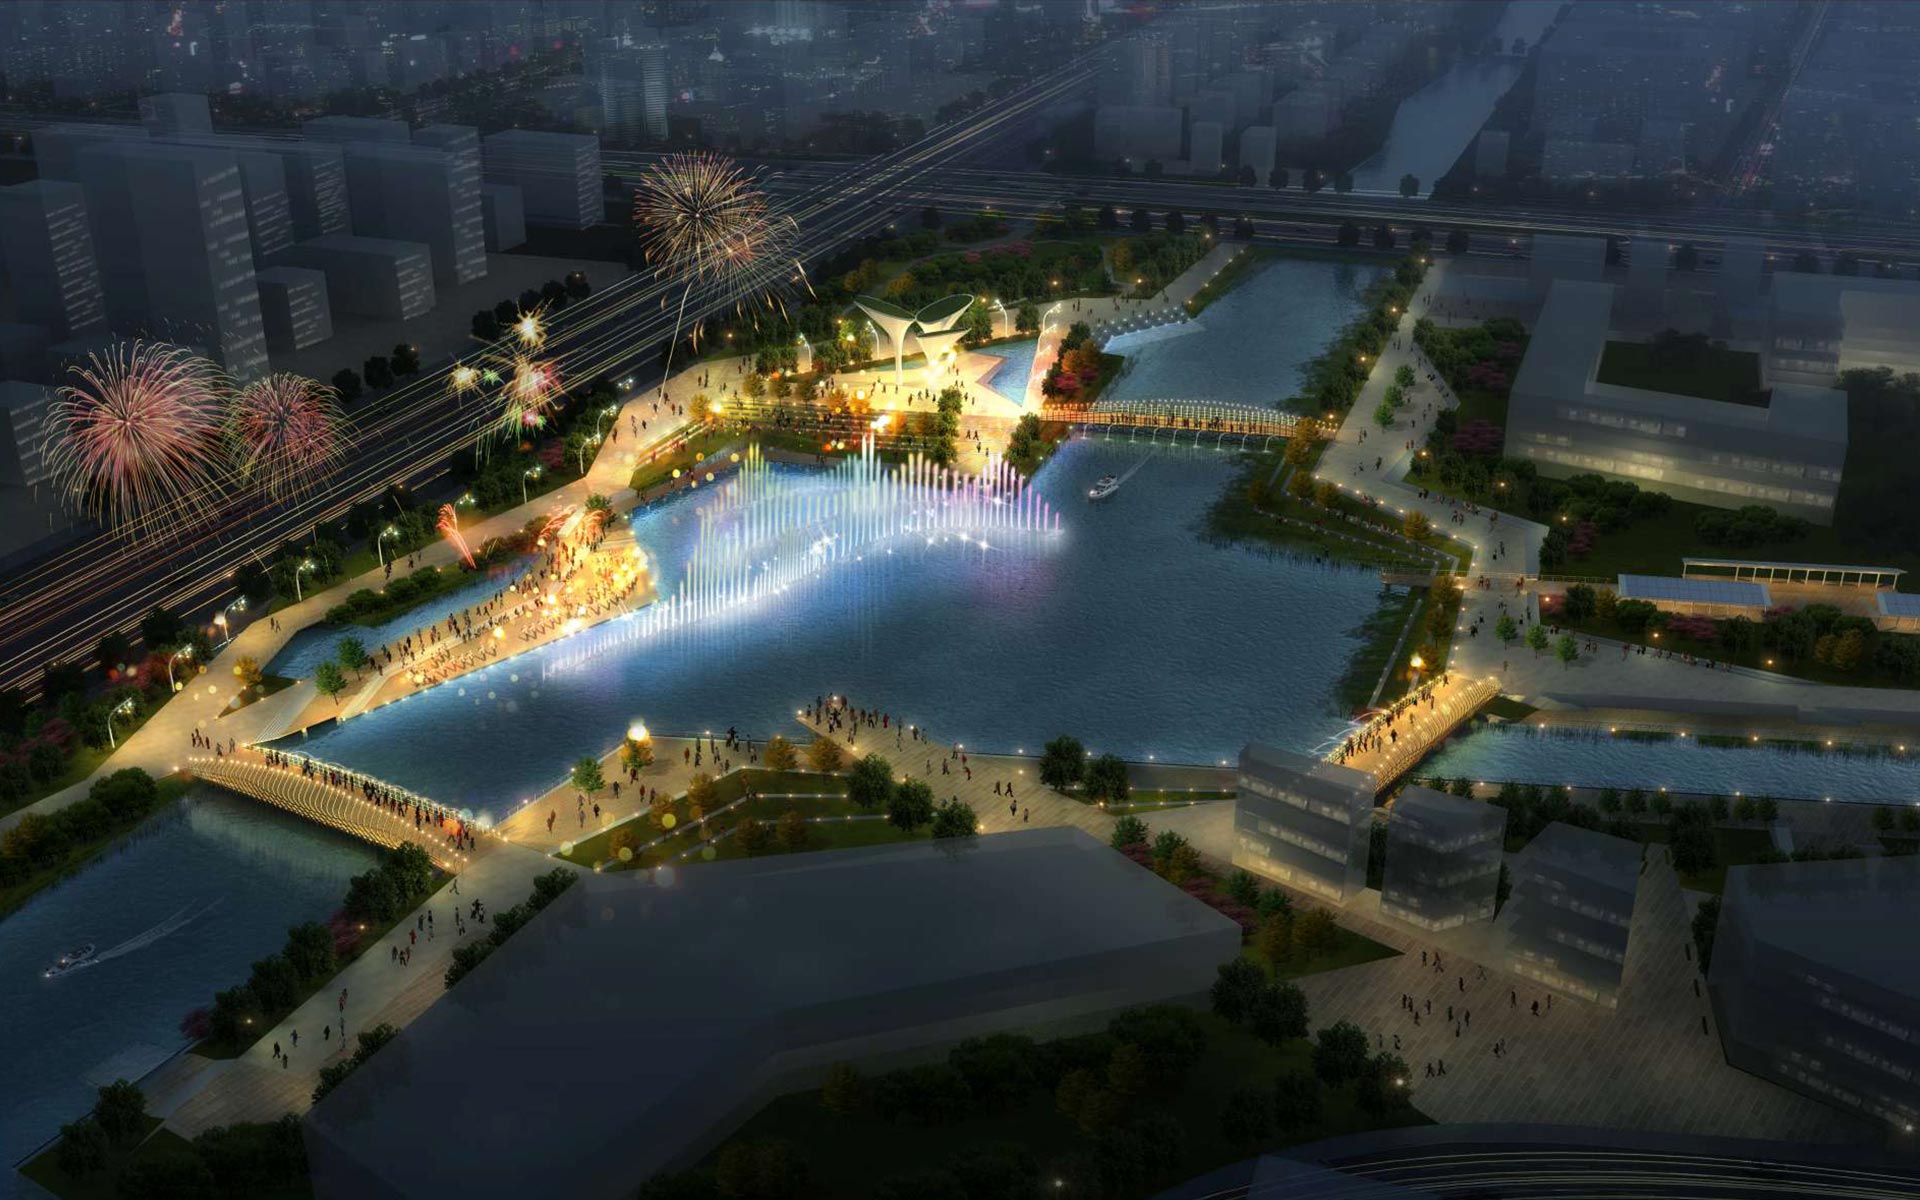 Guangzhou nansha waterfront landscape music fountain